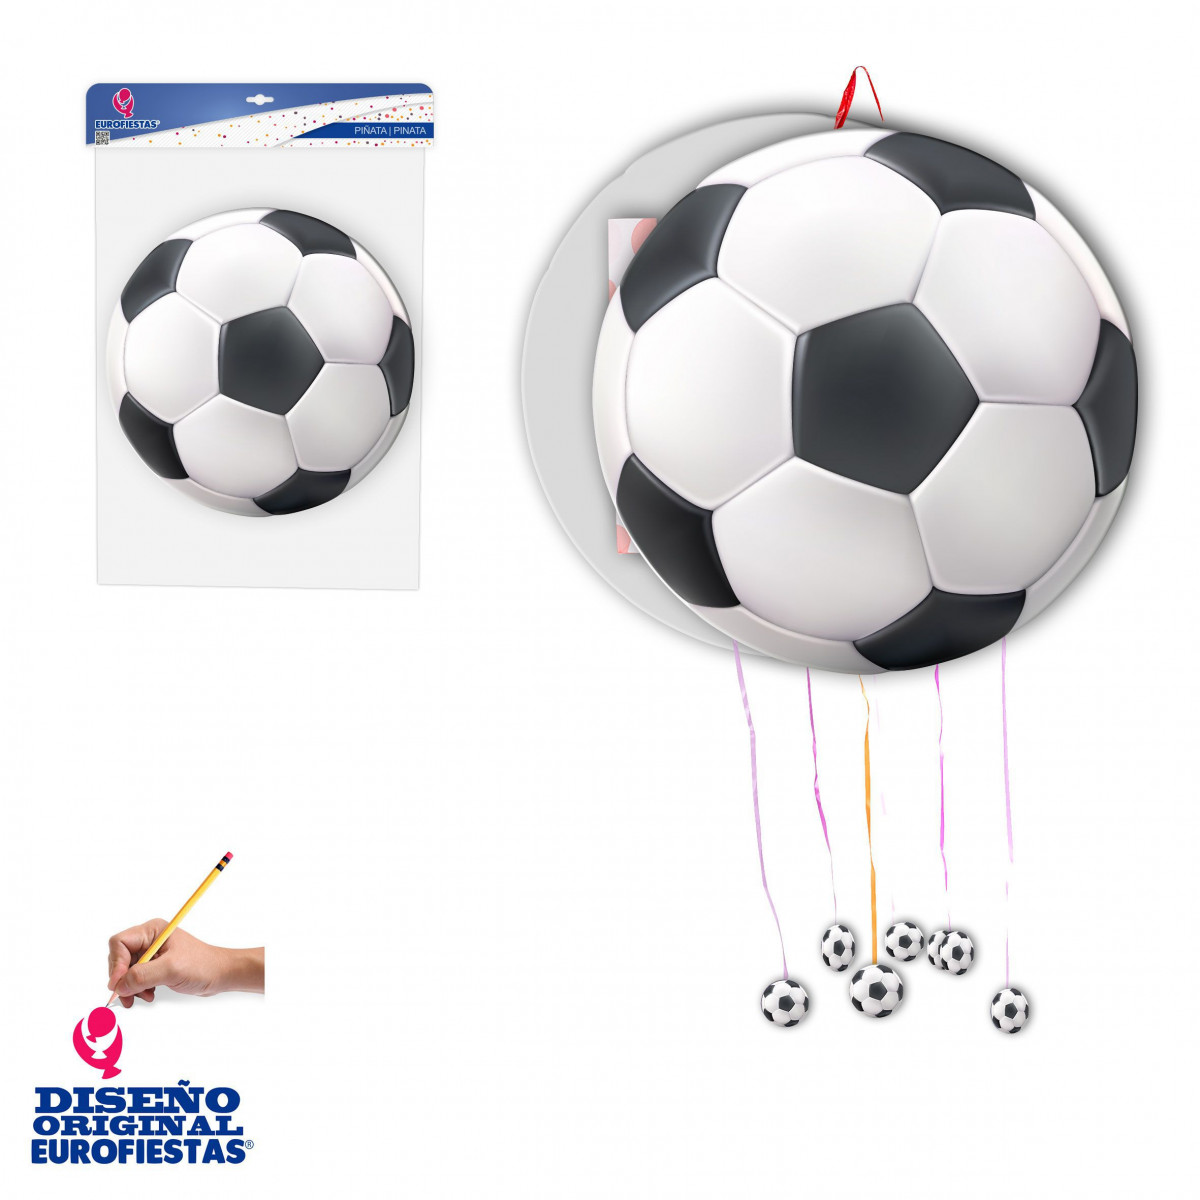 Piñata en forme de ballon de football